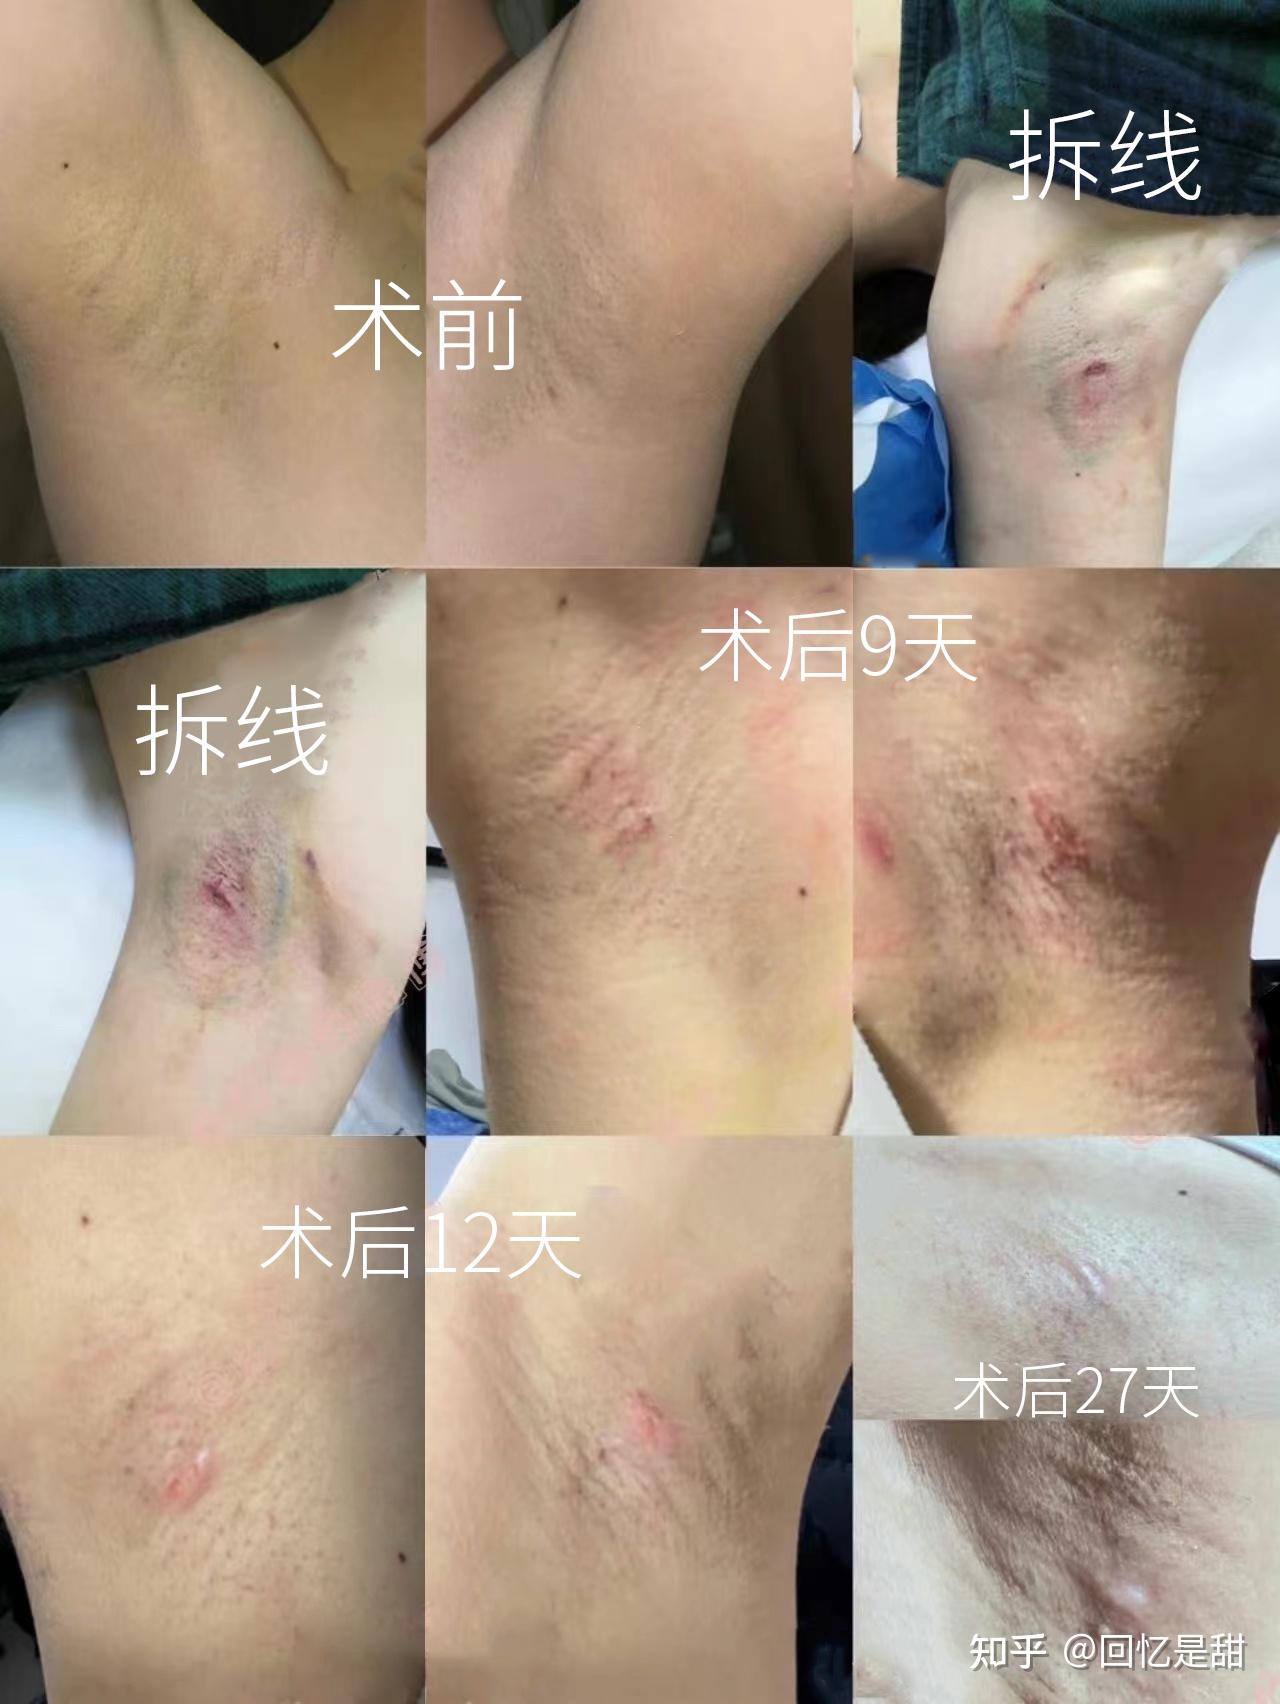 郑州公立医院做的狐臭手术,腋下恢复全记录,仅供参考! 